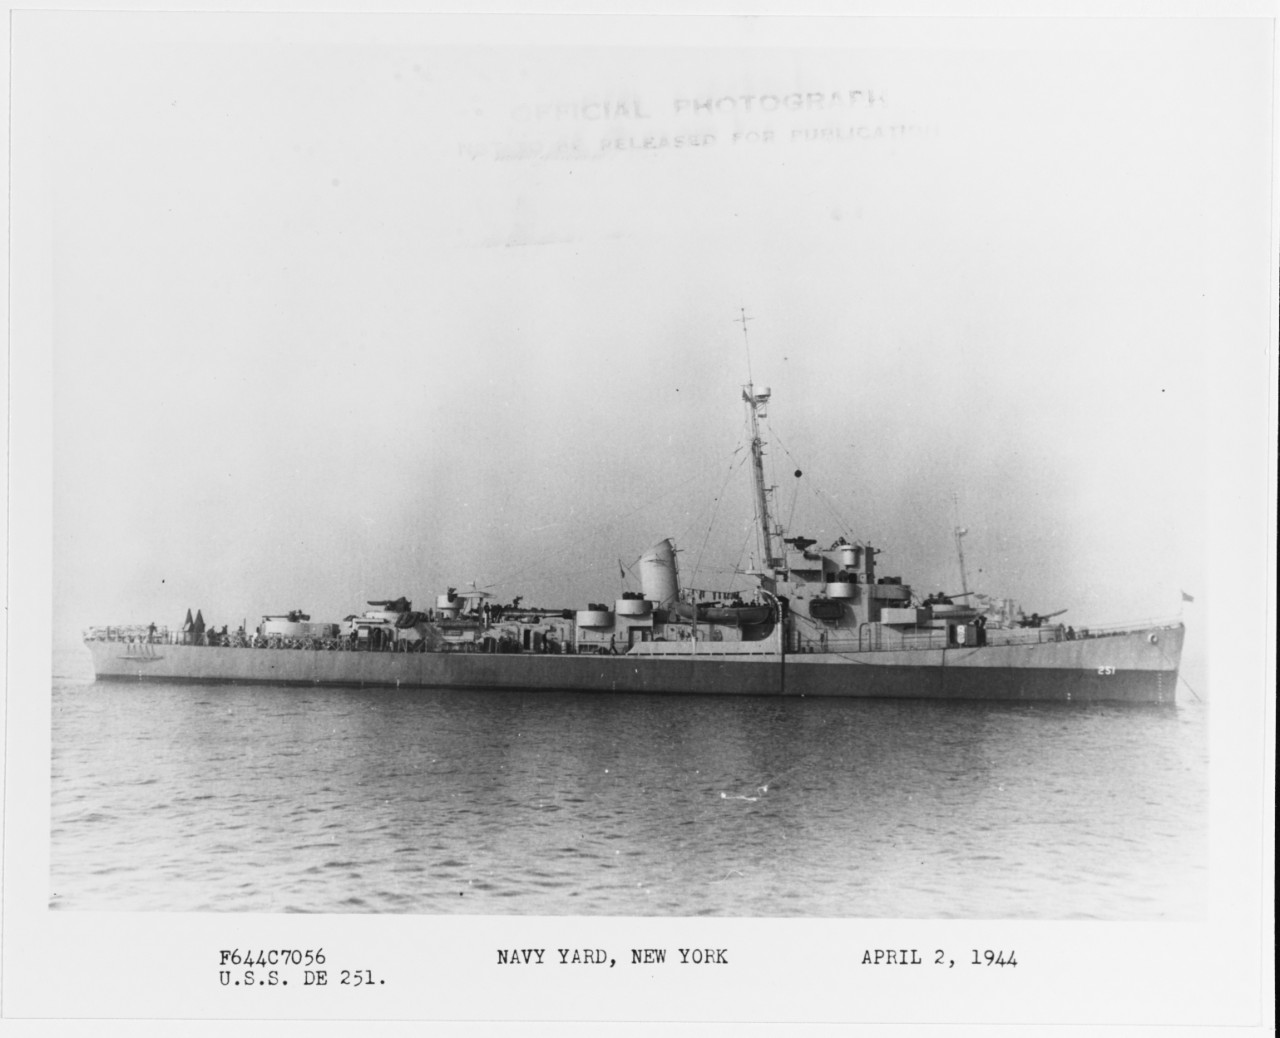 USS CAMP (DE-251)